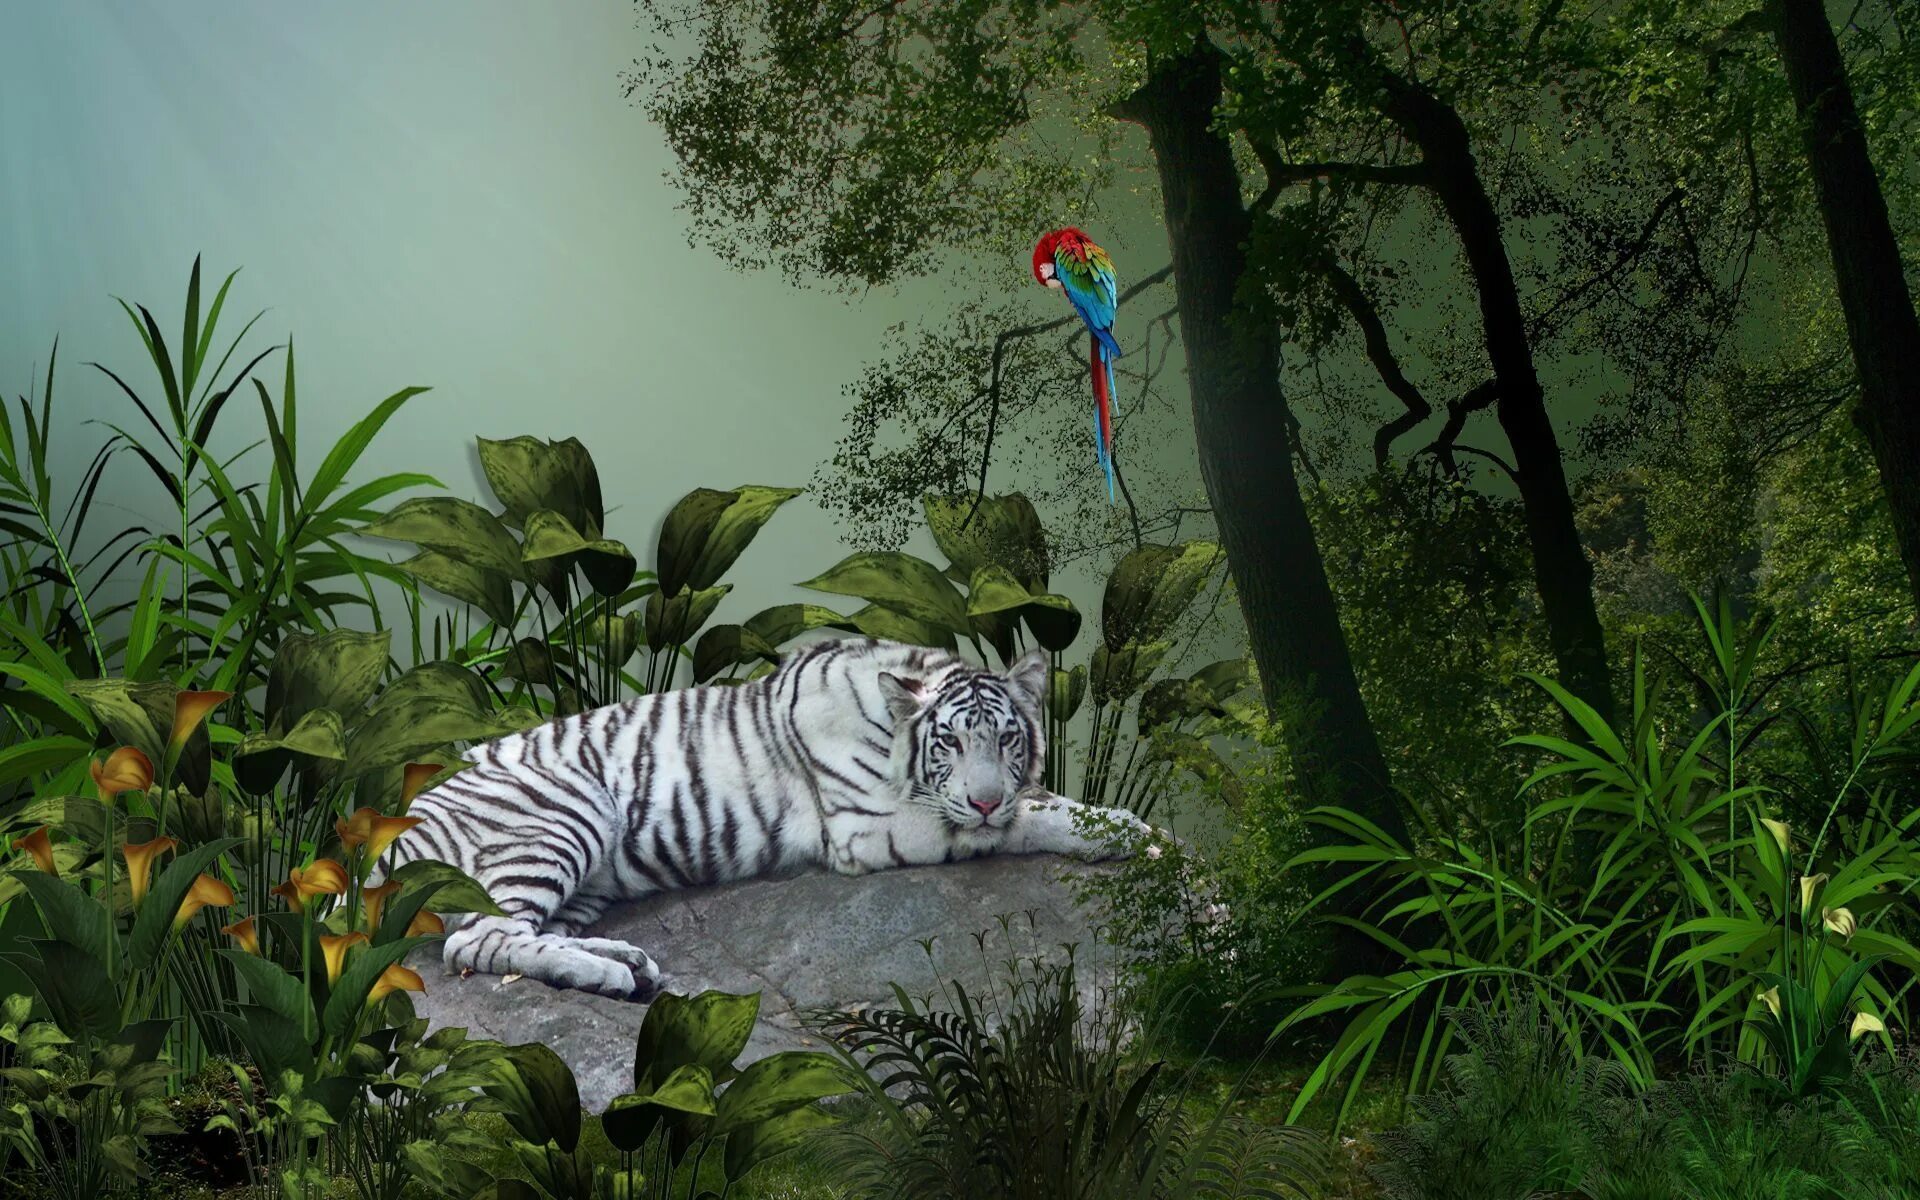 Jungle download. Обои джунгли. Животные джунглей. Тигр в джунглях. Фотообои с животными.